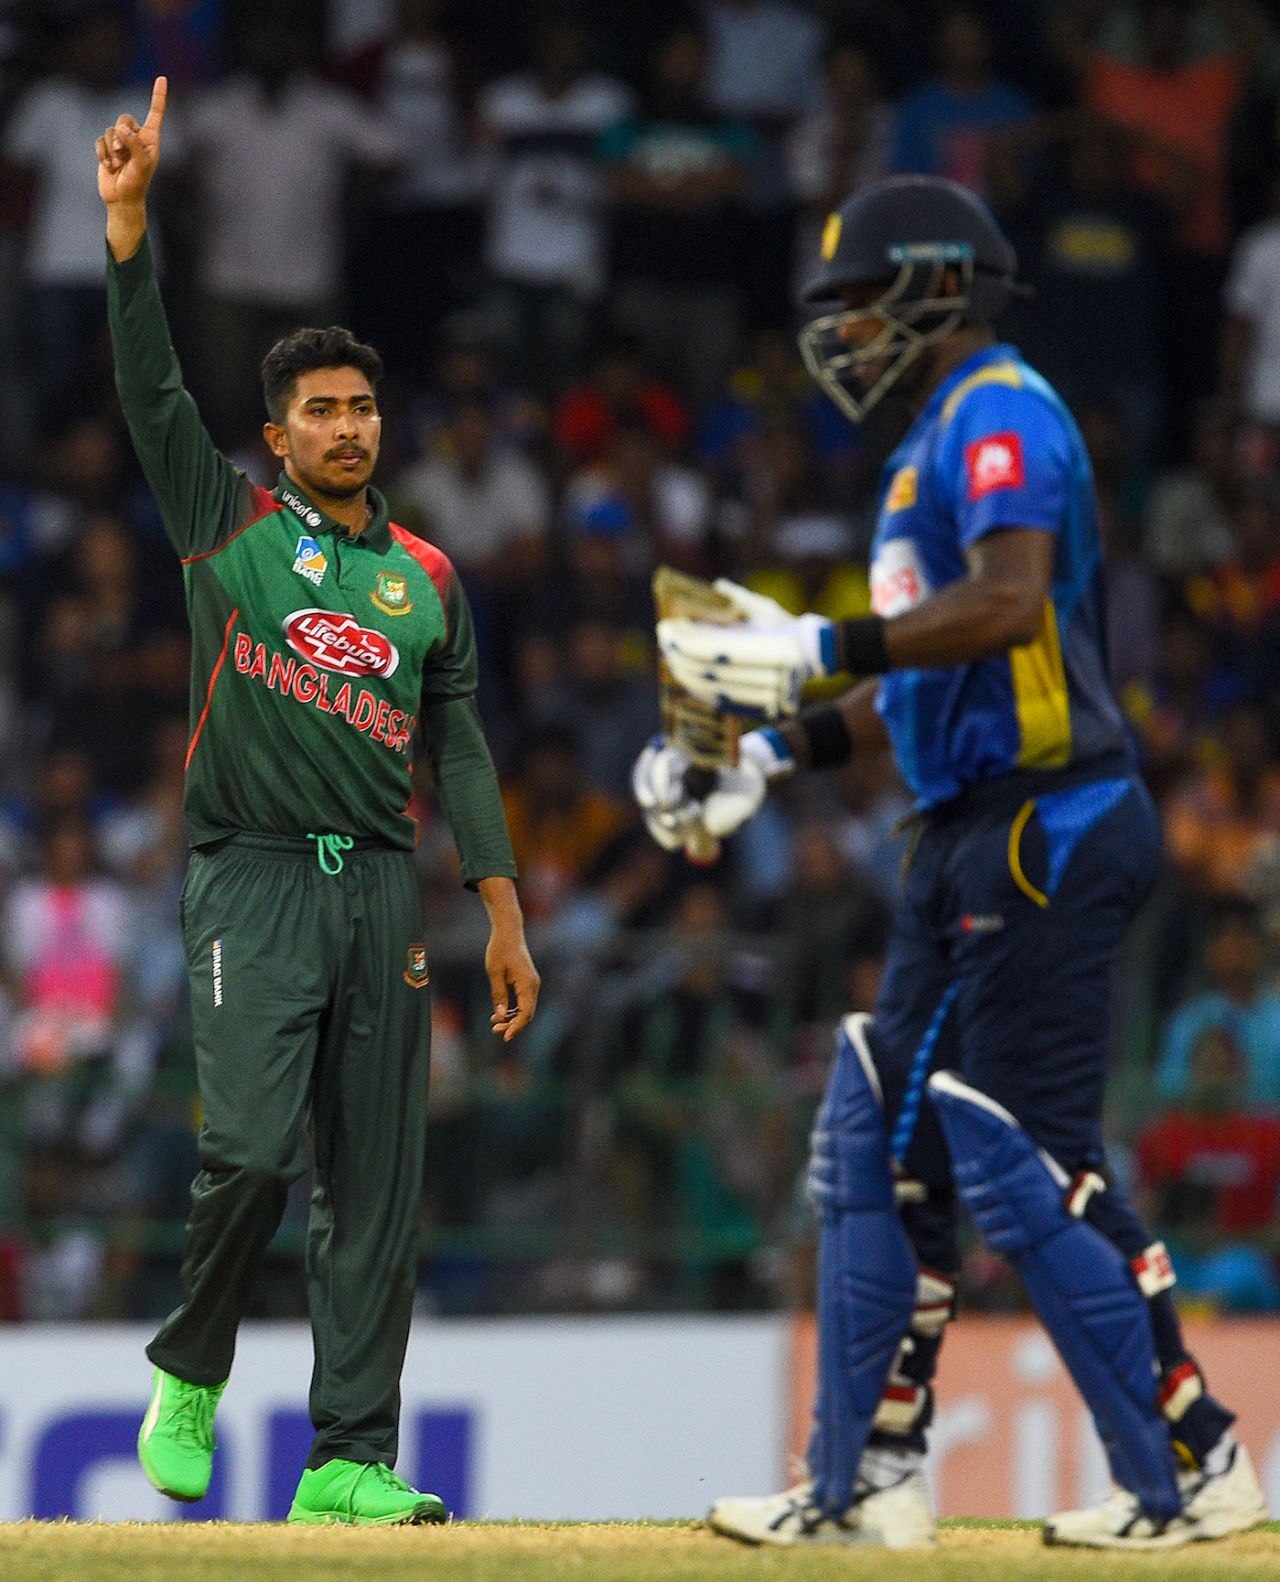 Soumya Sarkar celebrates one of his three wickets, Sri Lanka v Bangladesh, 3rd ODI, Colombo, July 31, 2019